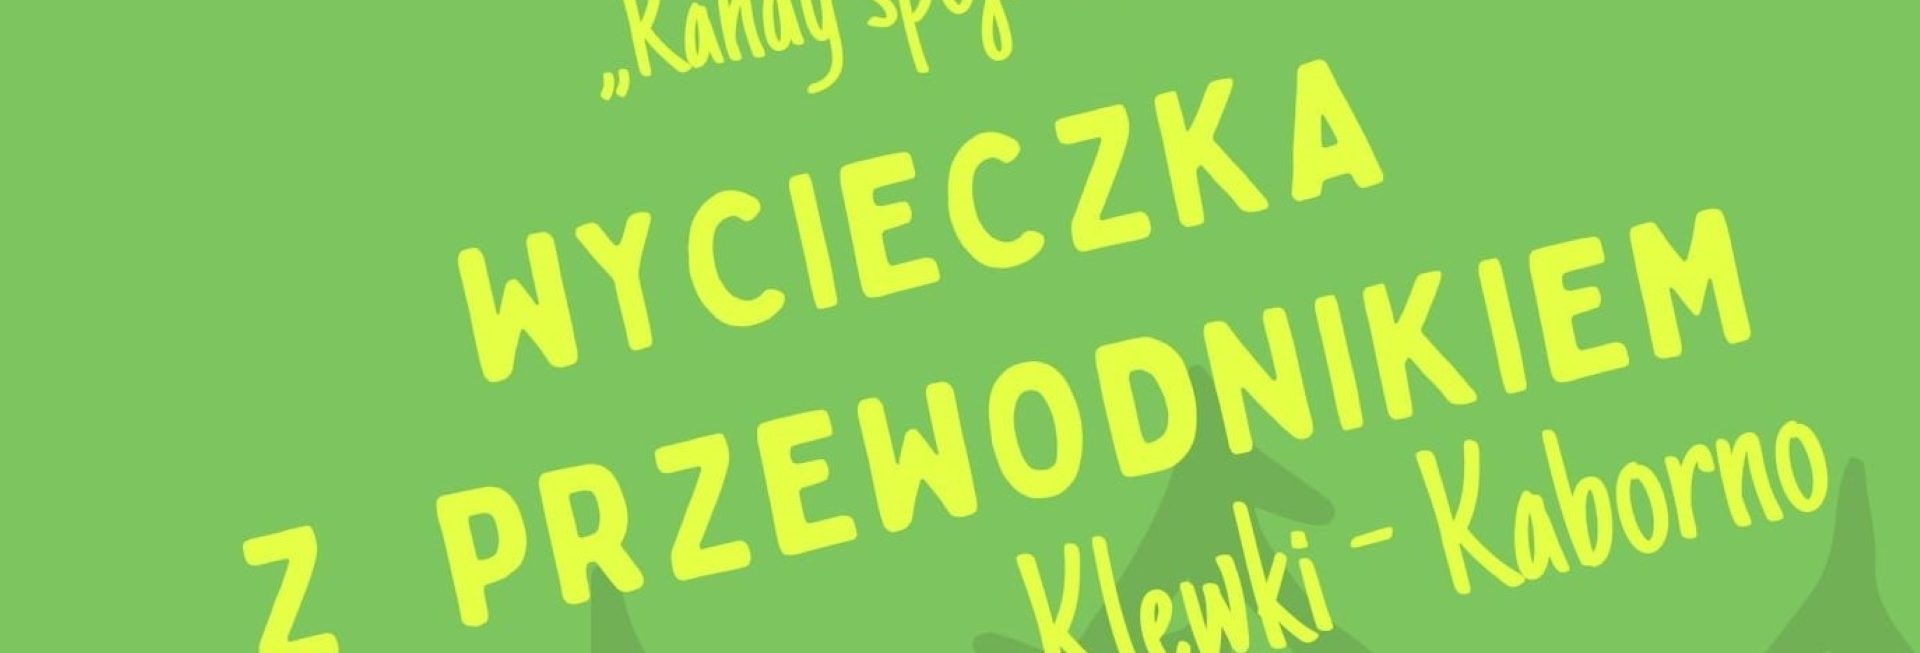 Plakat graficzny zapraszający na wycieczkę z przewodnikiem trasą Klewki - Kaborno 2021.